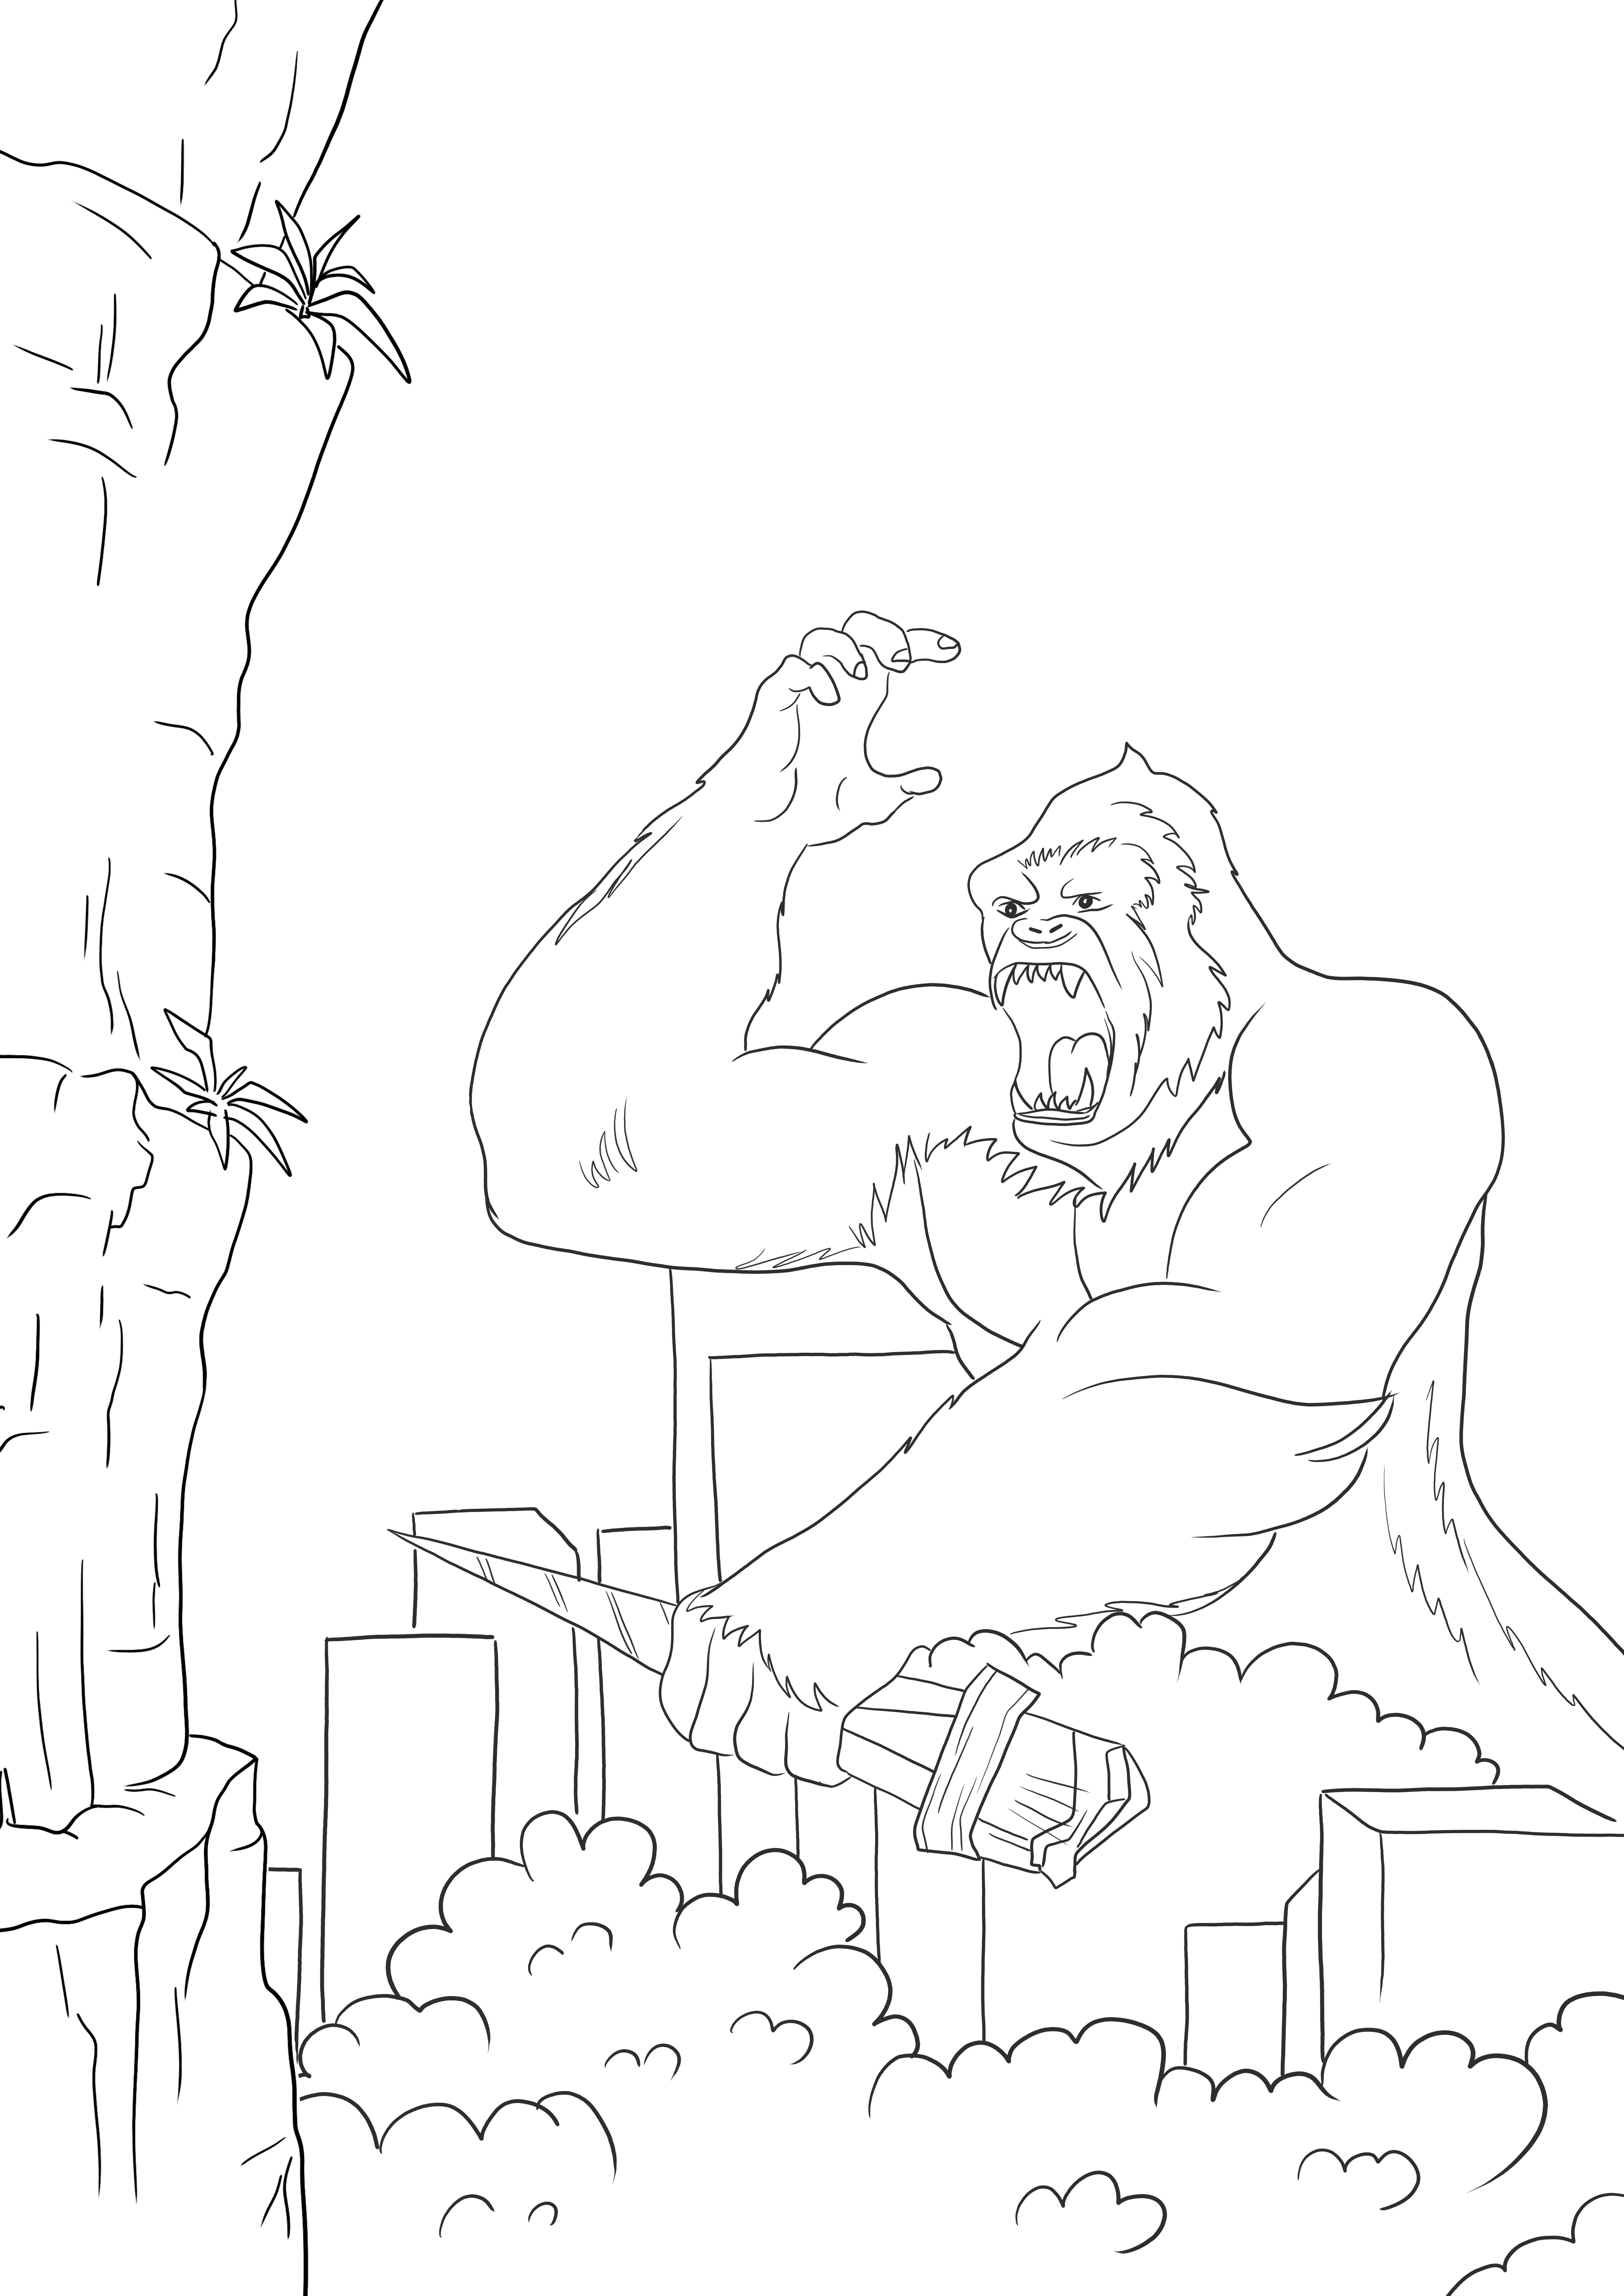 King Kong vs Godzilla ilmainen väritys tulostettavissa tai ladattavissa